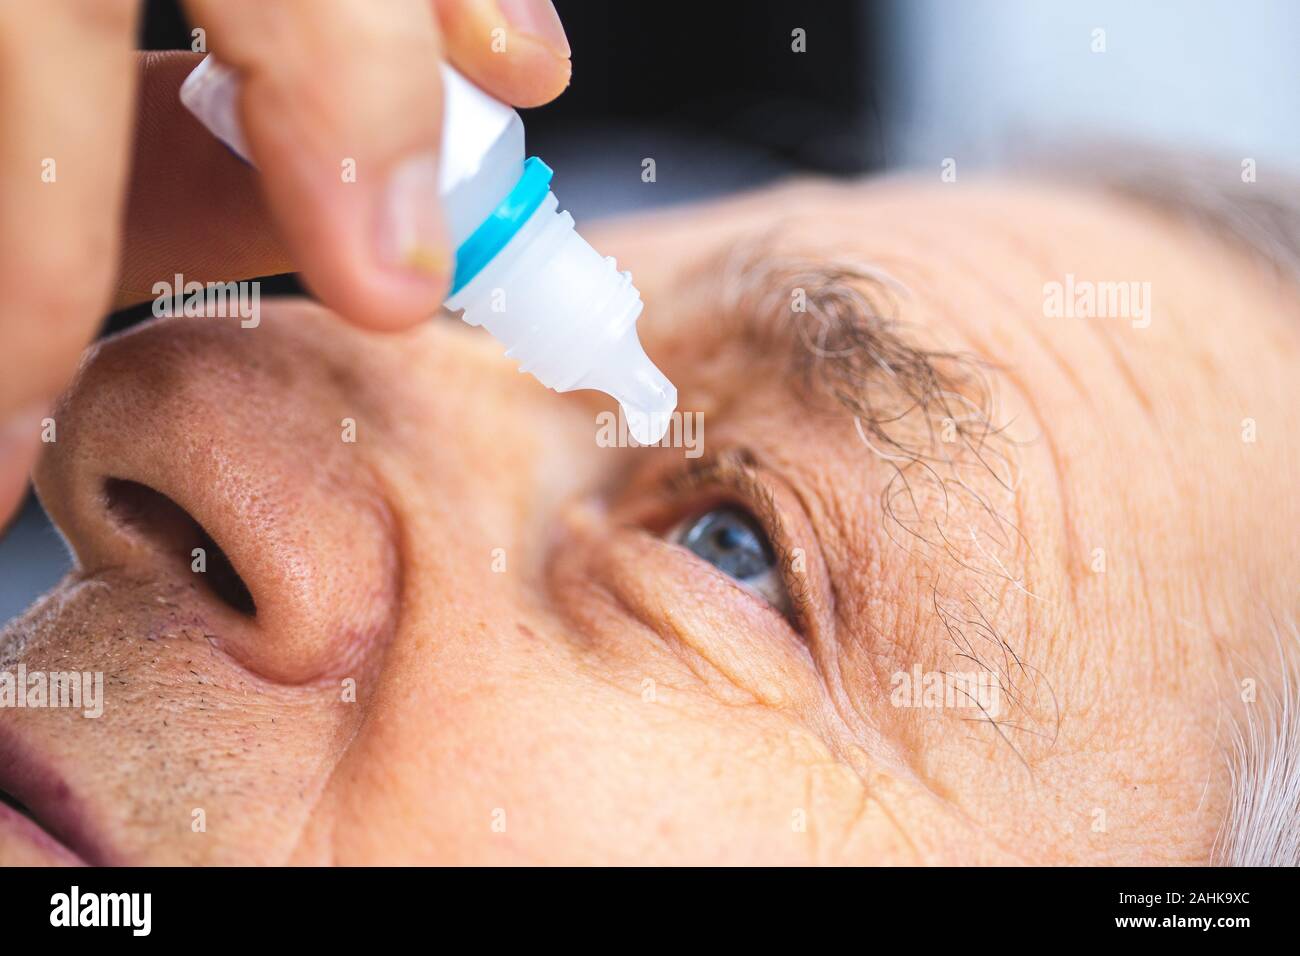 Ältere Person setzt Auge Tropfen in die Augen. Ältere Menschen, Augentropfen Stockfoto